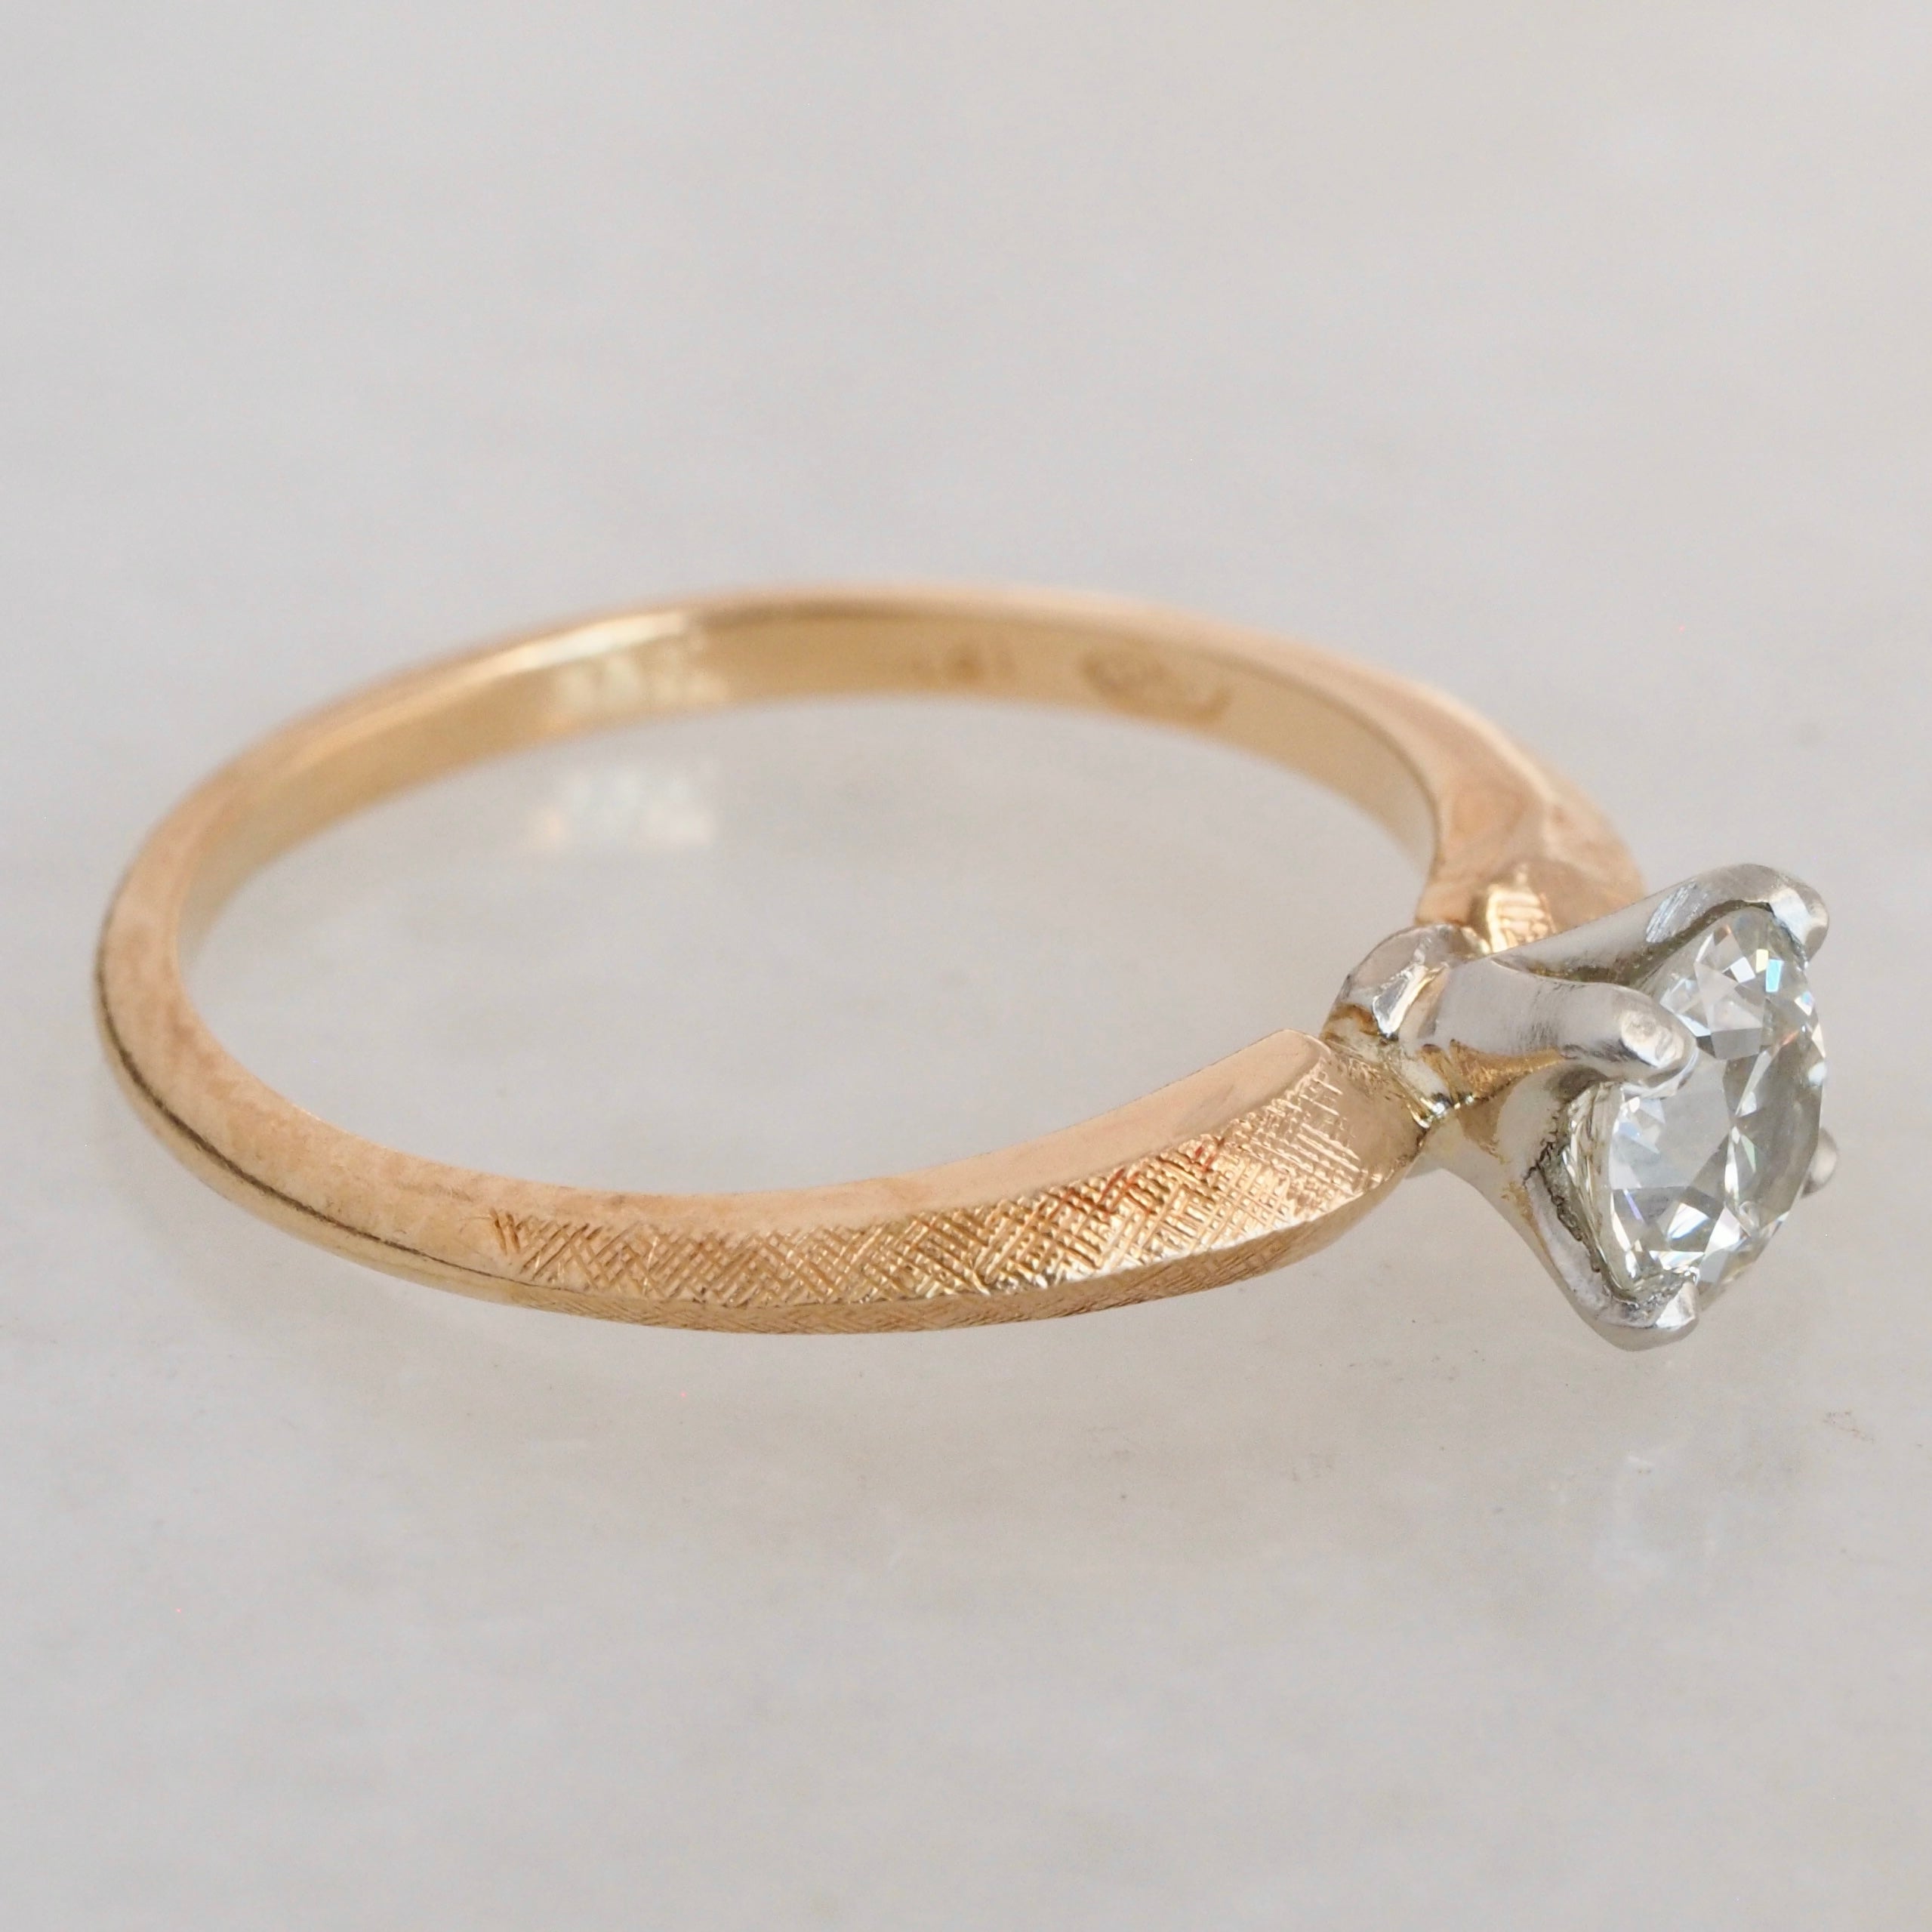 Midcentury Modern Brushed 18k Gold Old European Cut Diamond Ring